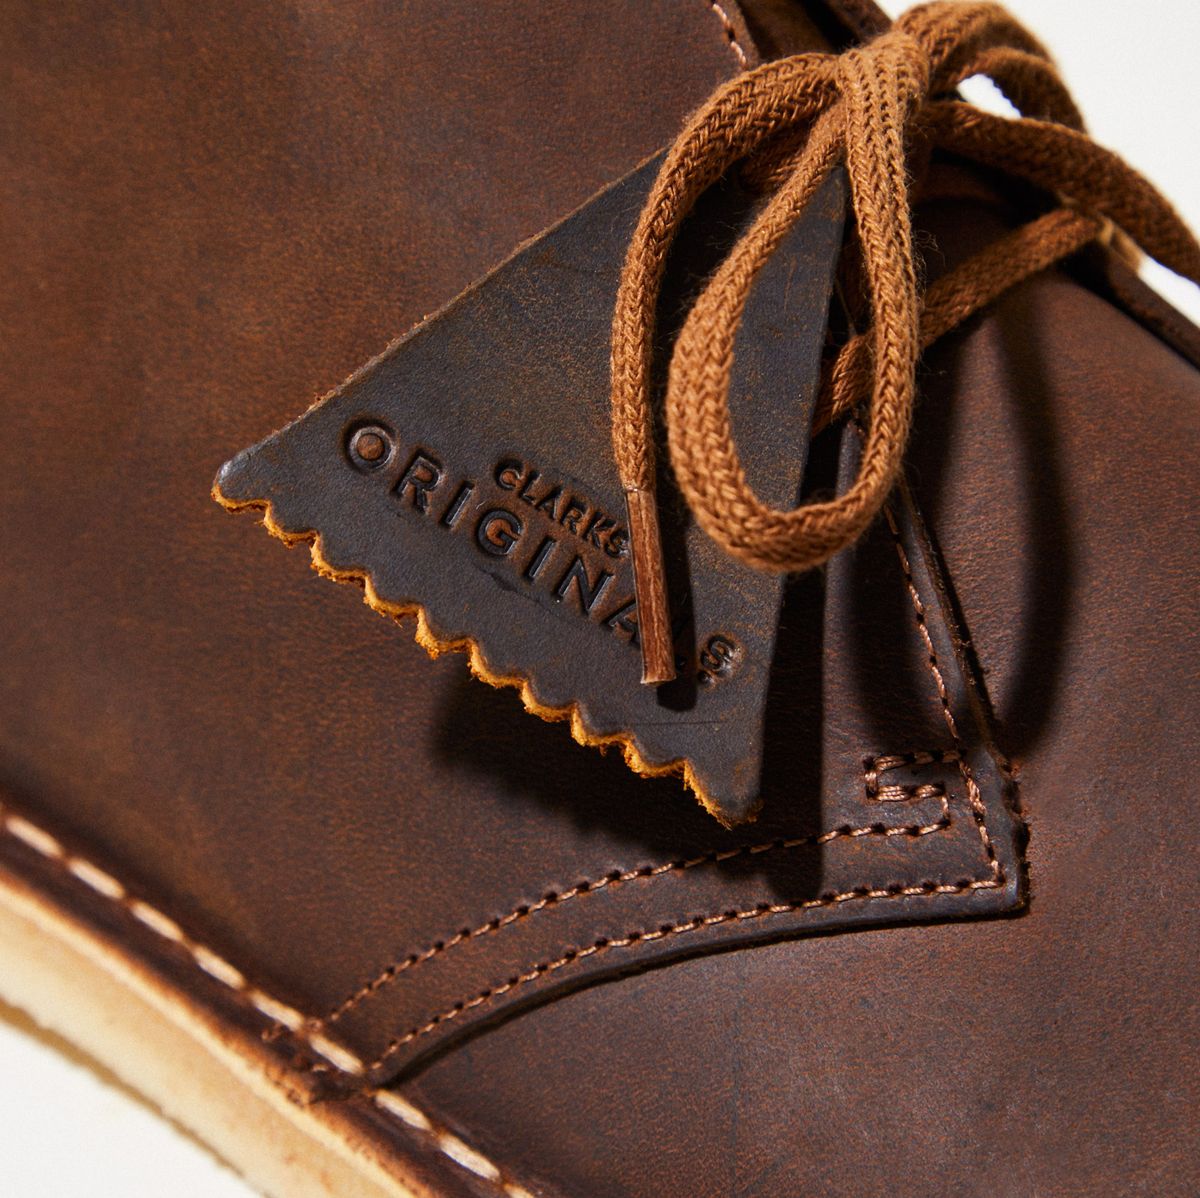 Tak for din hjælp I detaljer kravle Clarks Originals Desert Boots Review, Endorsement, and History